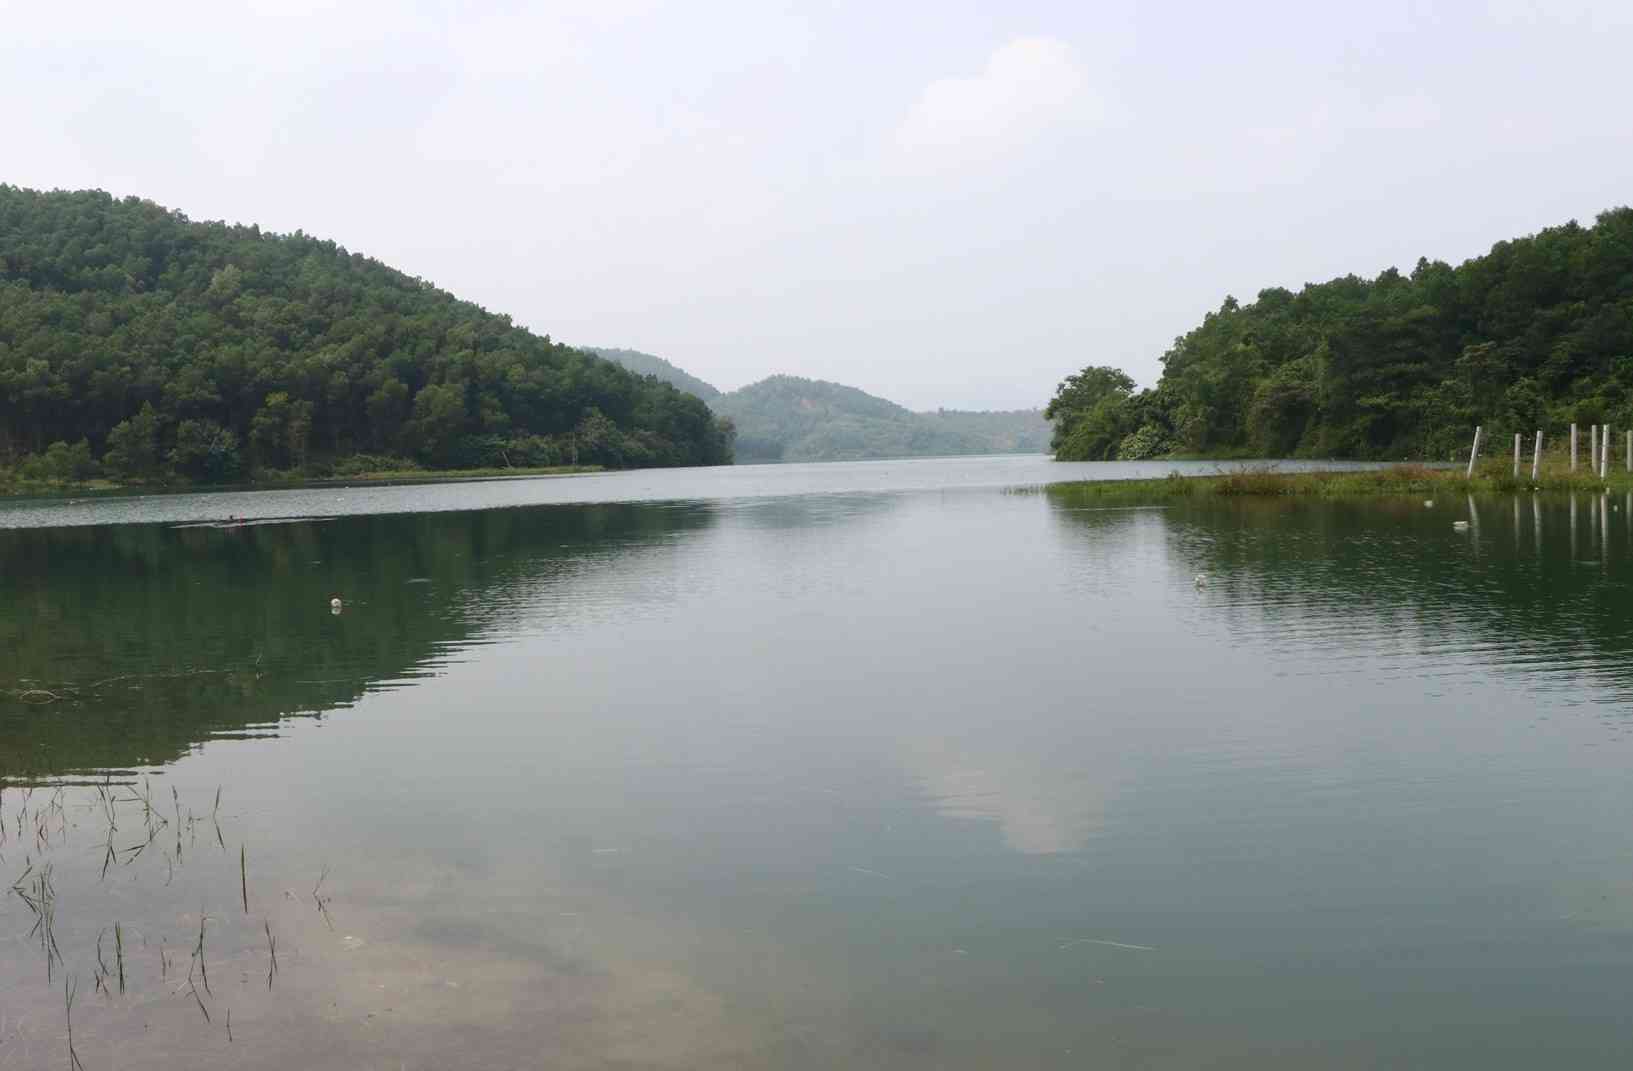 Hồ Đầm Bài được Công ty CP Đầu tư nước sạch Sông Đà "mượn" để sản xuất, kinh doanh nước sách